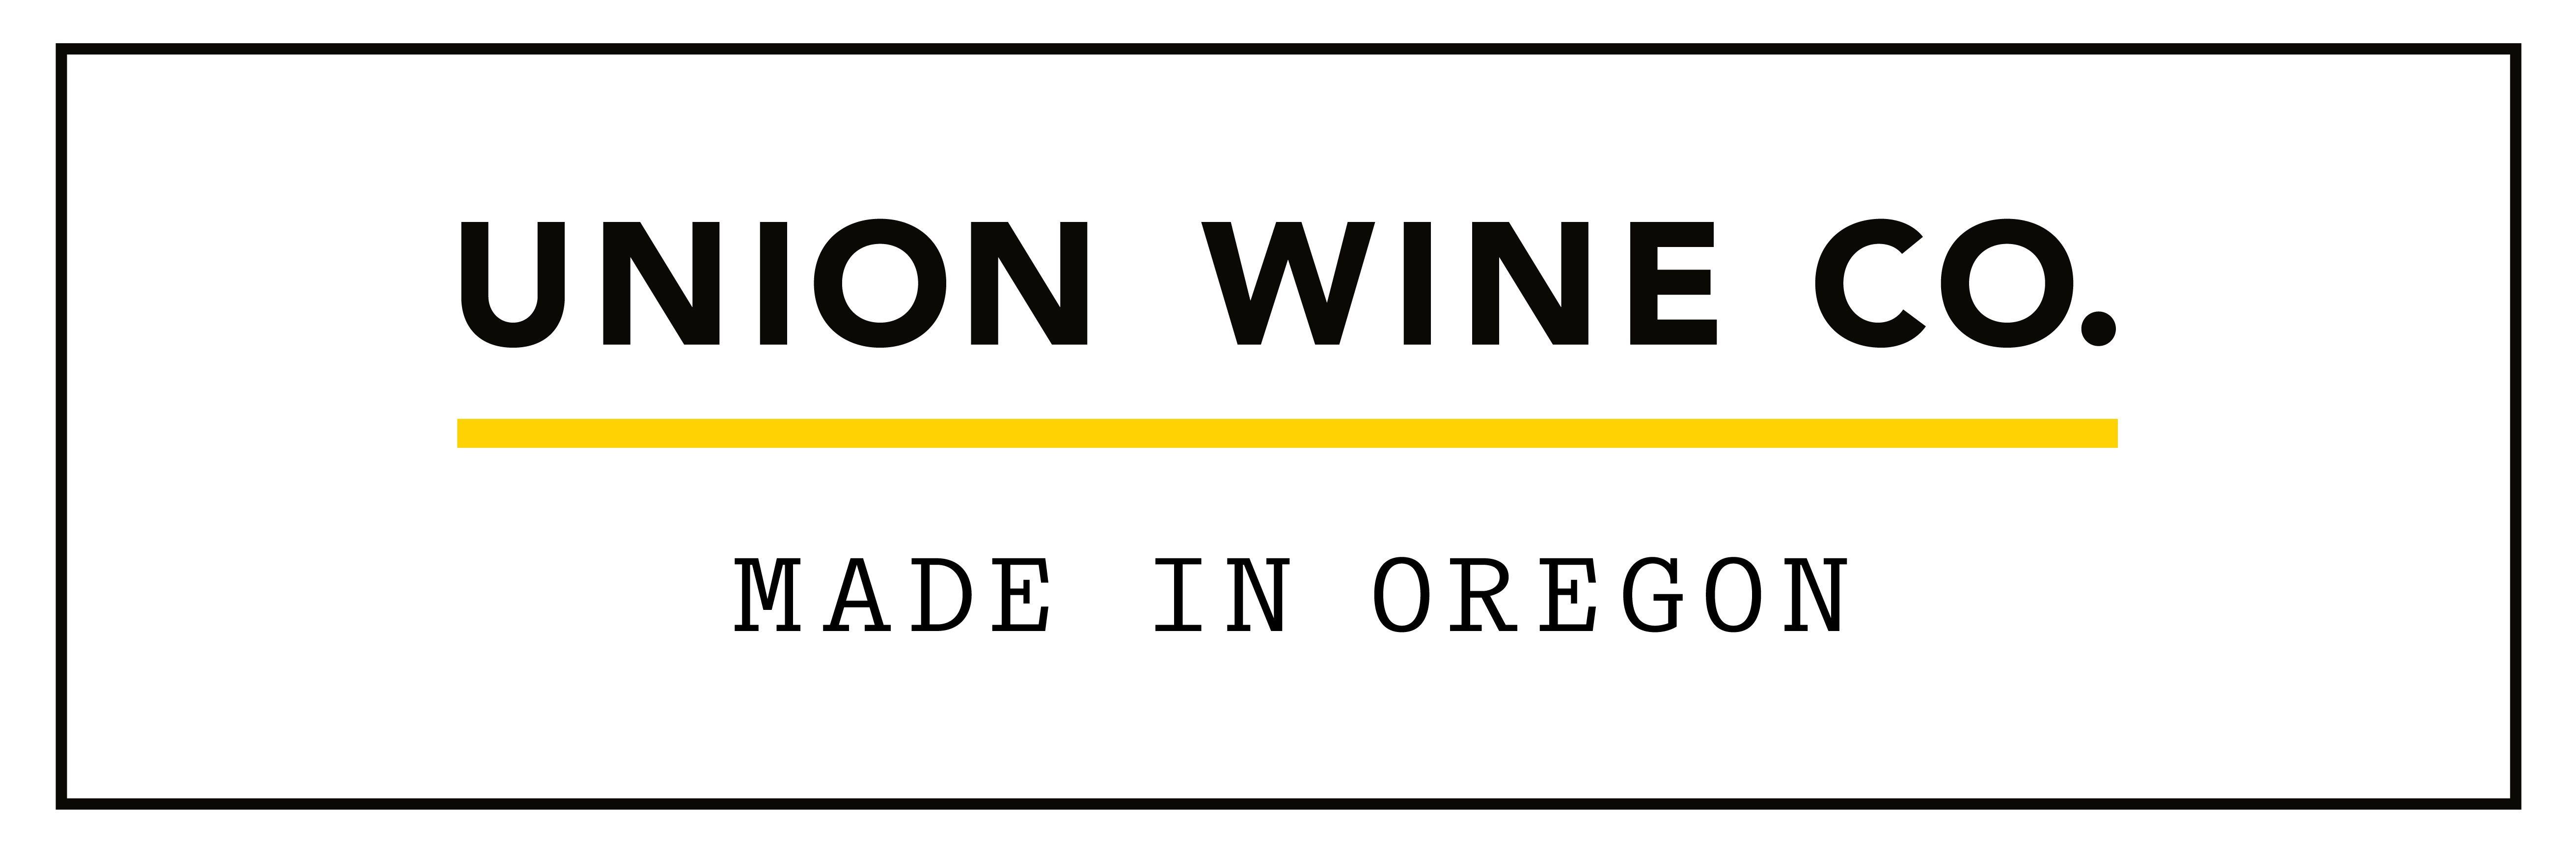 Union Company Logo - Uniquely Oregon: Union Wine Company – Travel Wine Chick